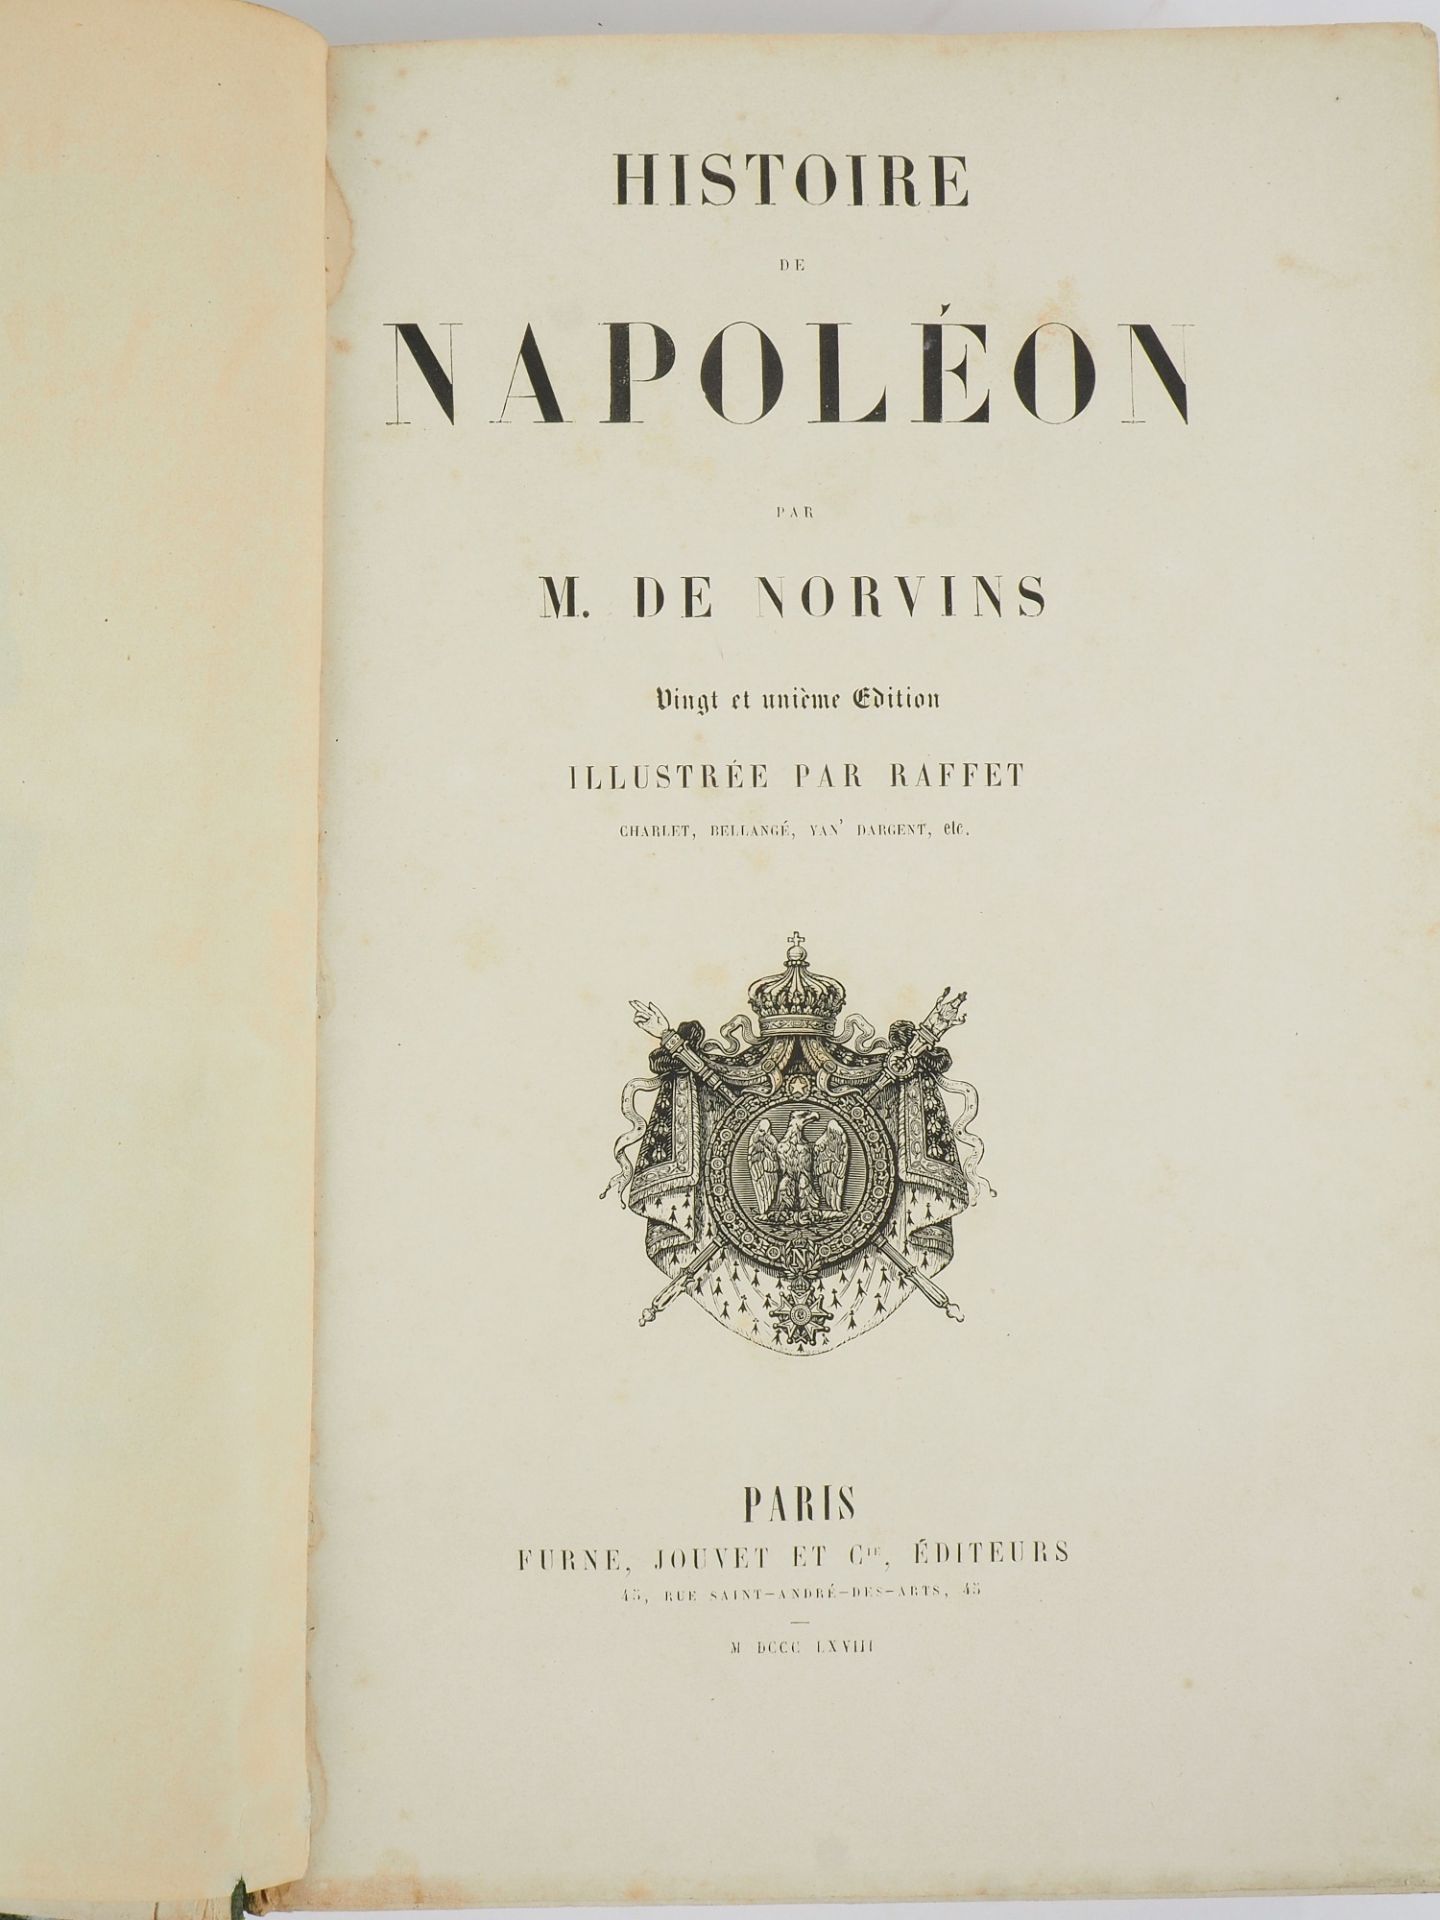 M. de Norvins - Histoire de Napoléon, 1868 - Bild 2 aus 5